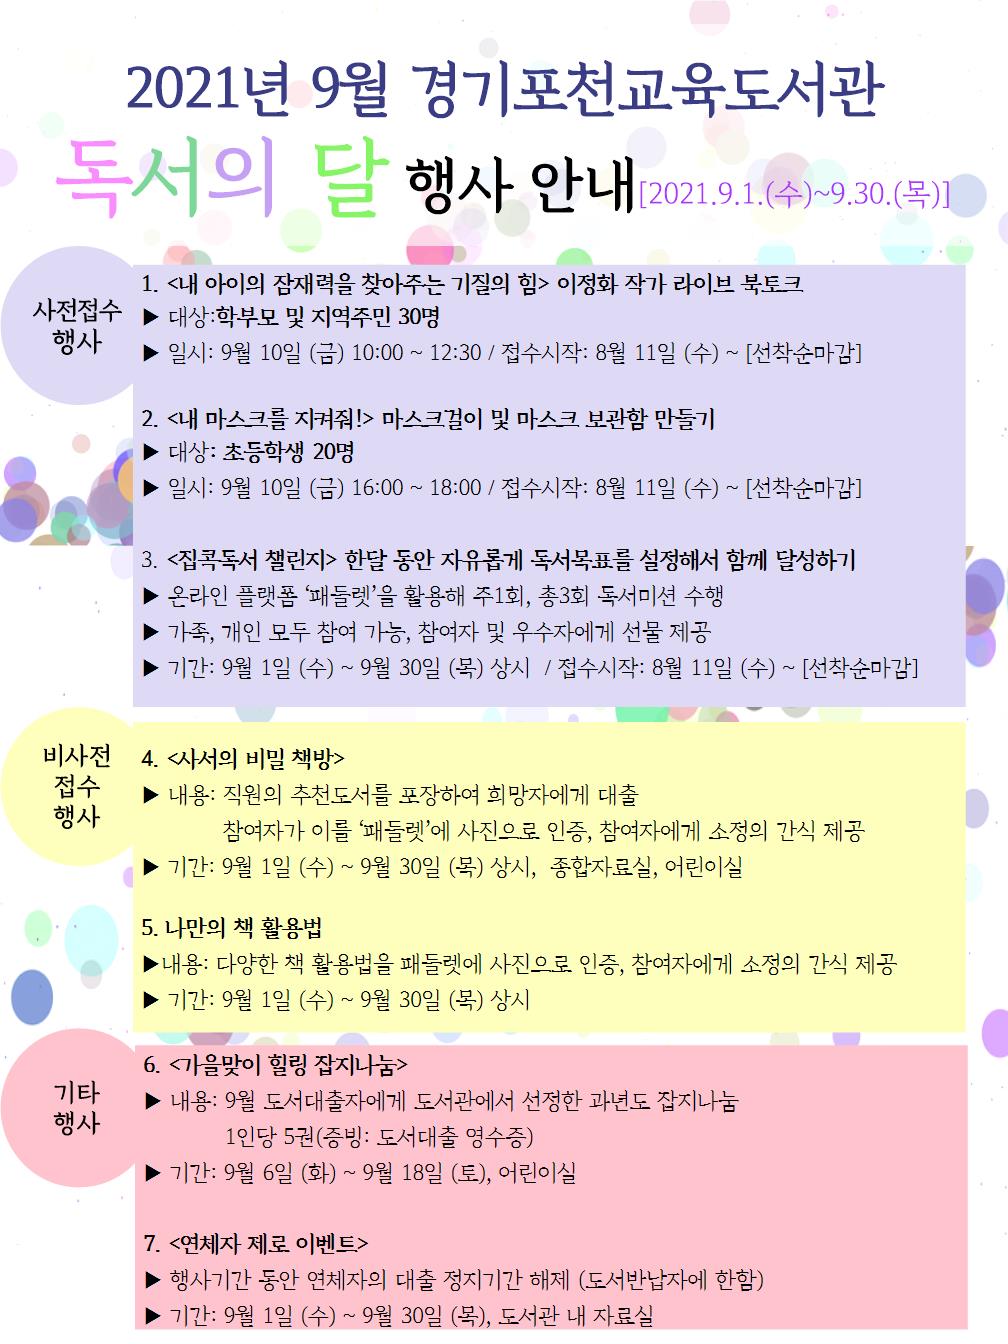 [일반] 표천교육도서관 9월 독서의 달 라이브북토크 행사 안내의 첨부이미지 2